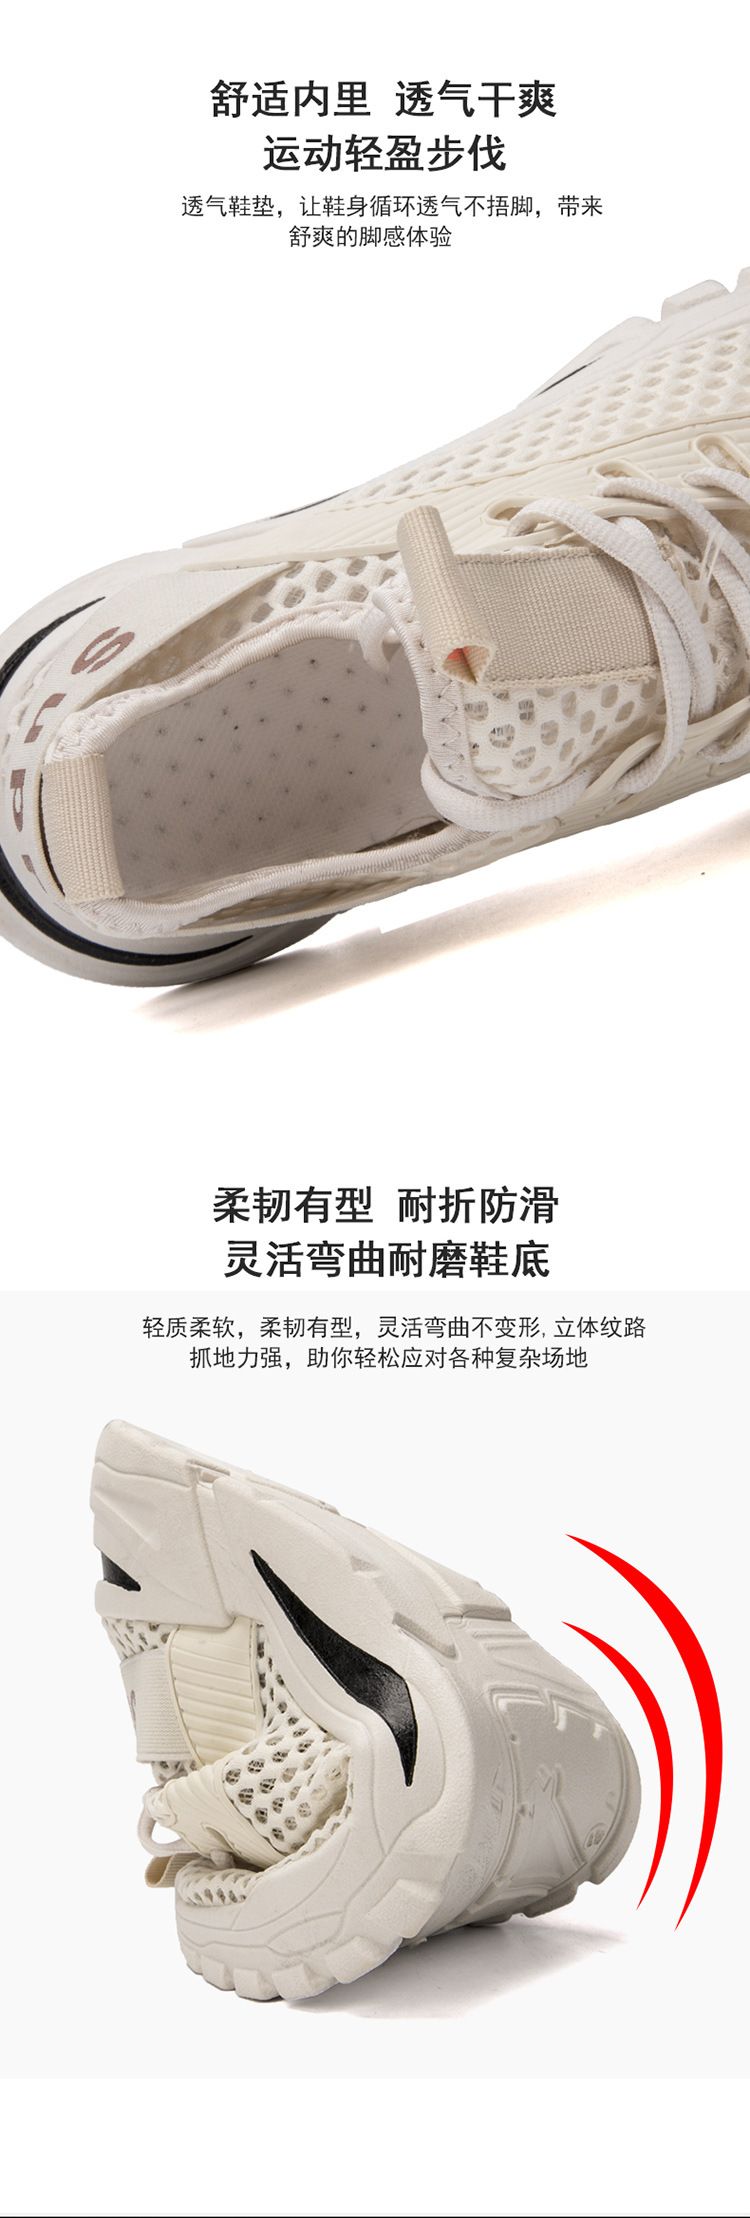 XP2021新款夏季网鞋透气百搭运动鞋男士休闲鞋韩版网面潮流男鞋